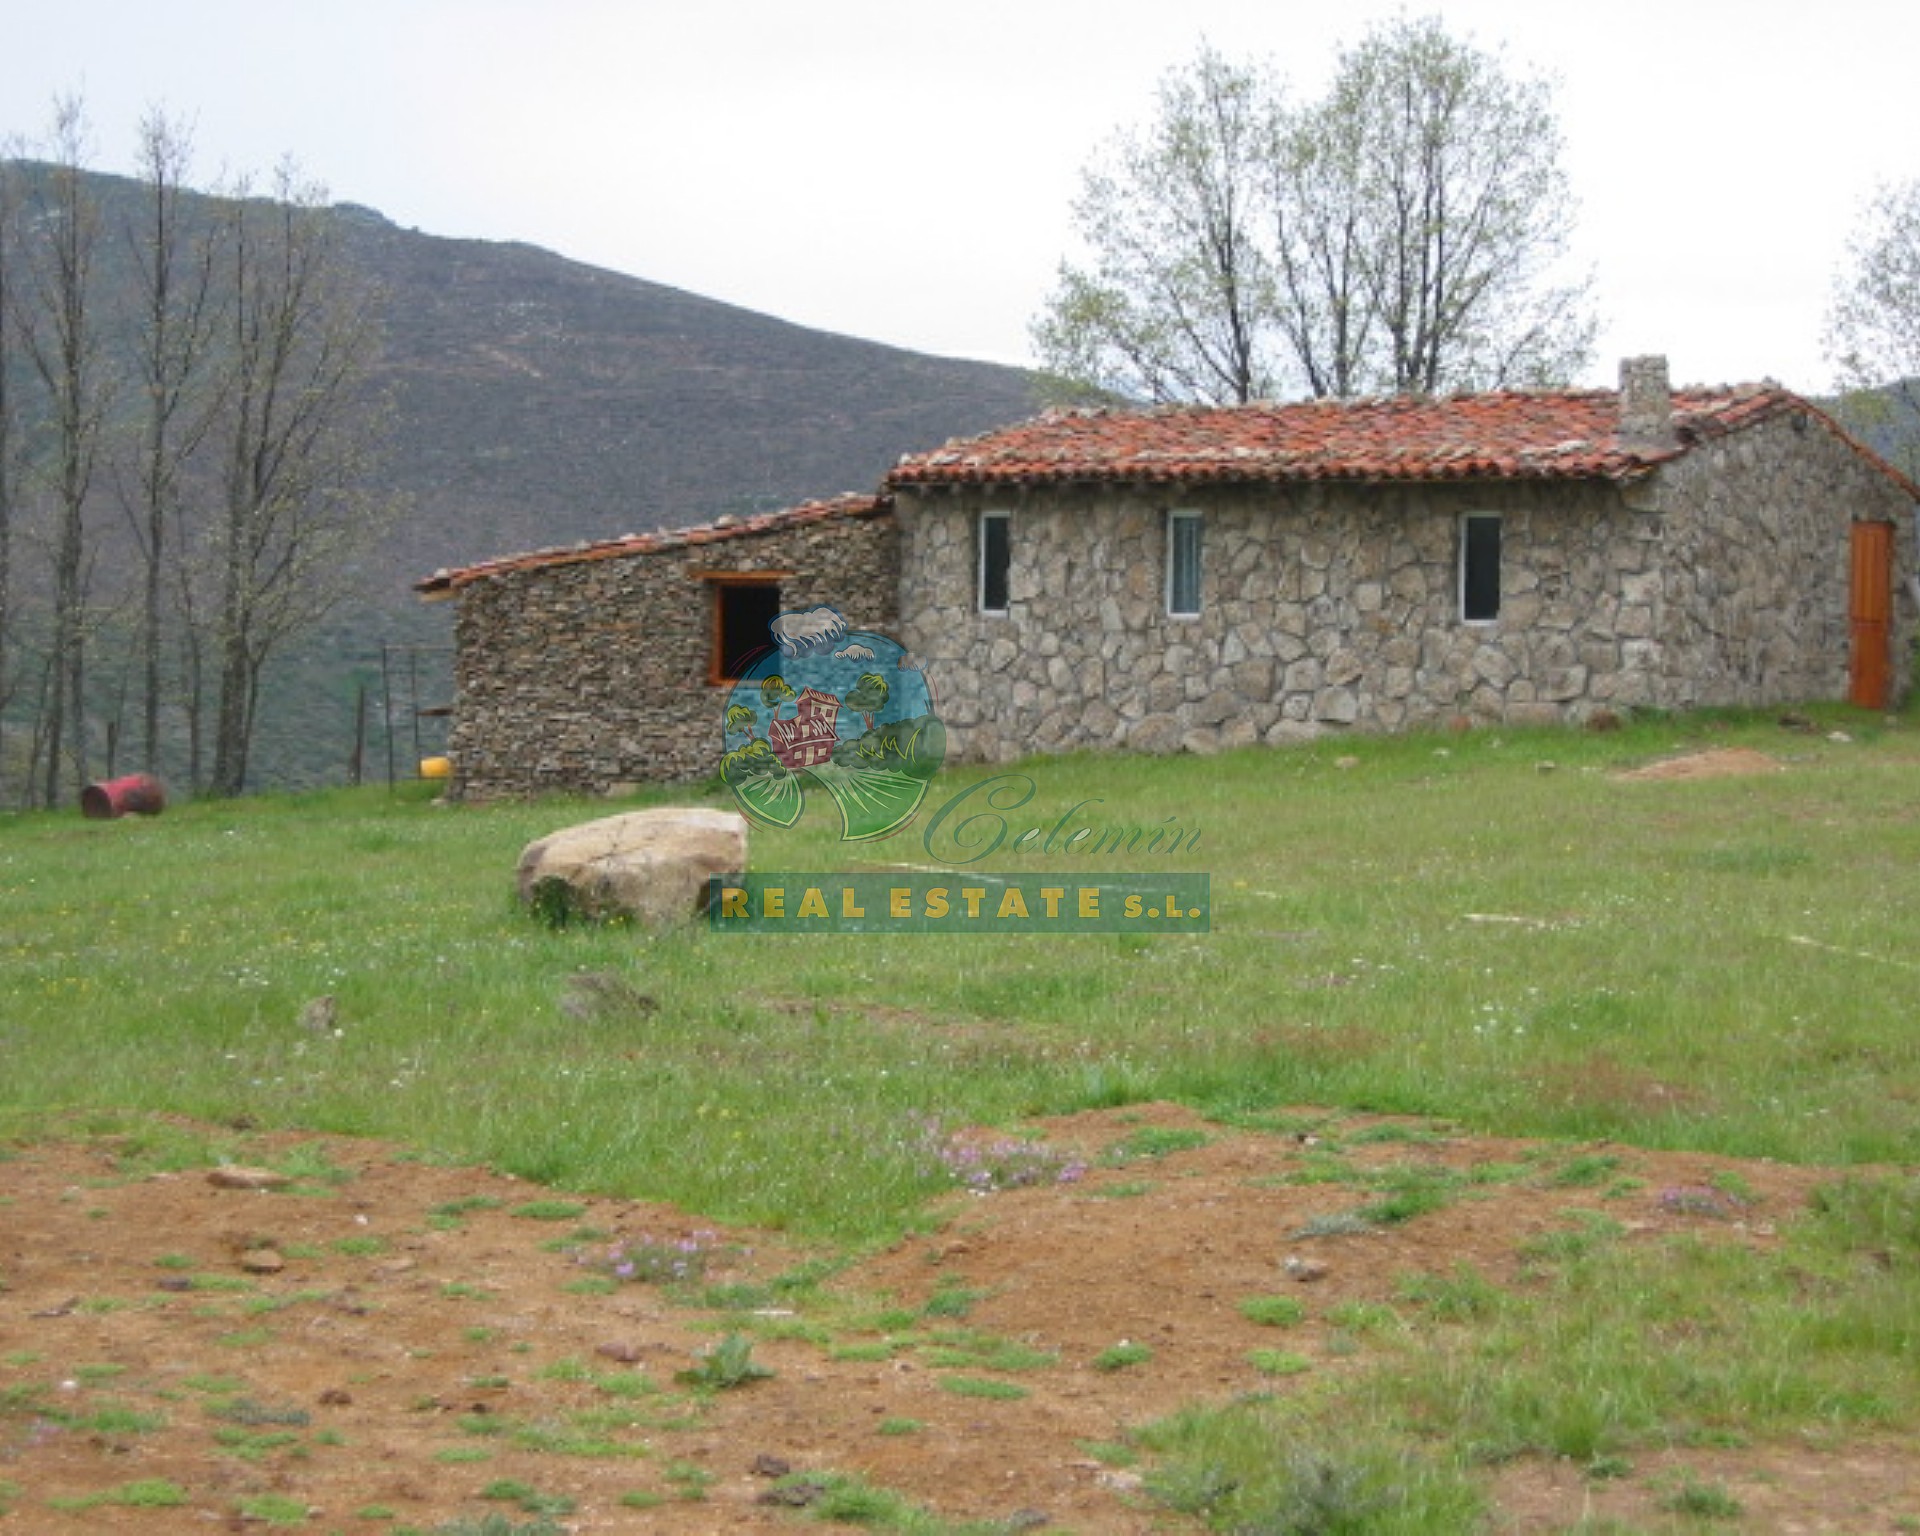 Rústica para usos ganaderos o medioambientales en Sierra de Gredos.